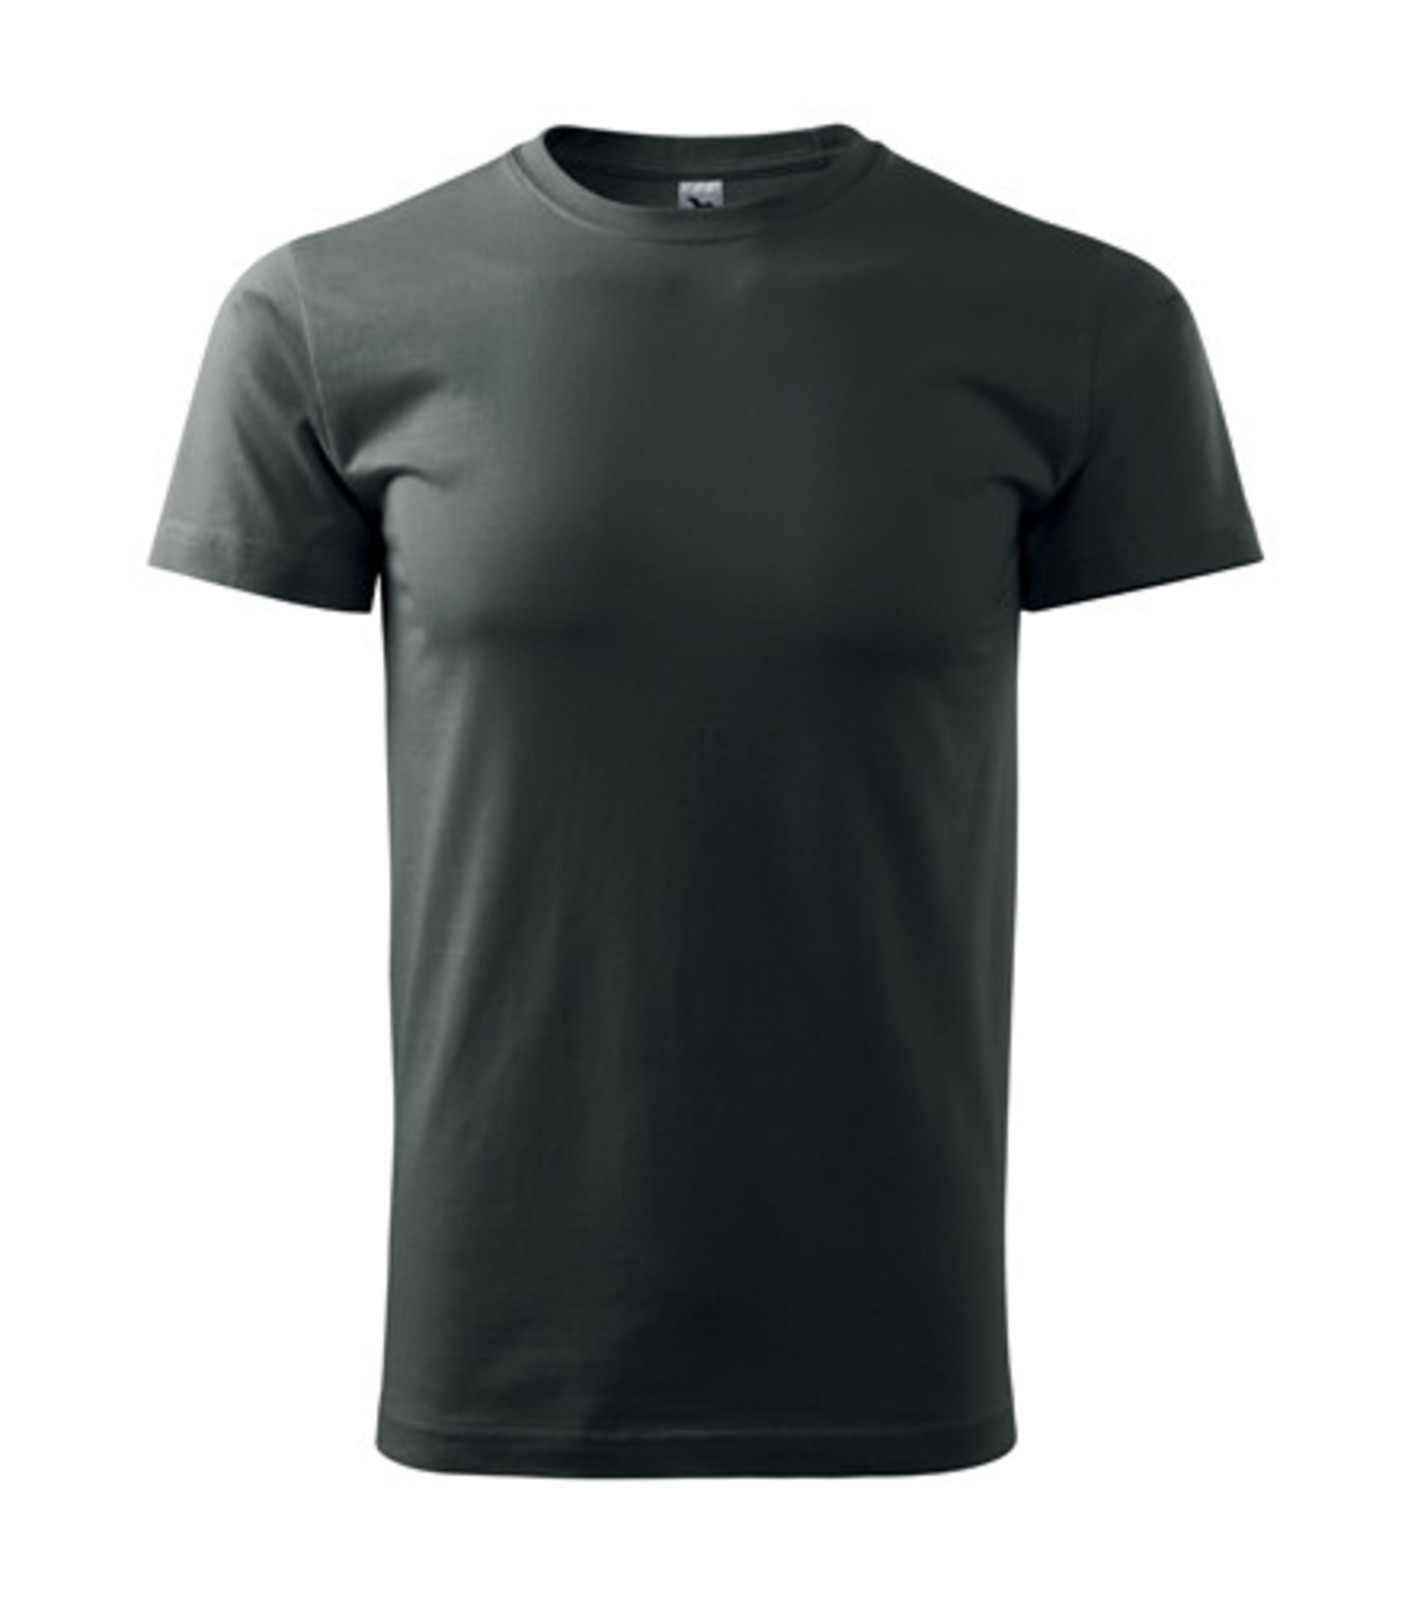 Unisex tričko Malfini Heavy New 137 - veľkosť: L, farba: tmavá bridlica